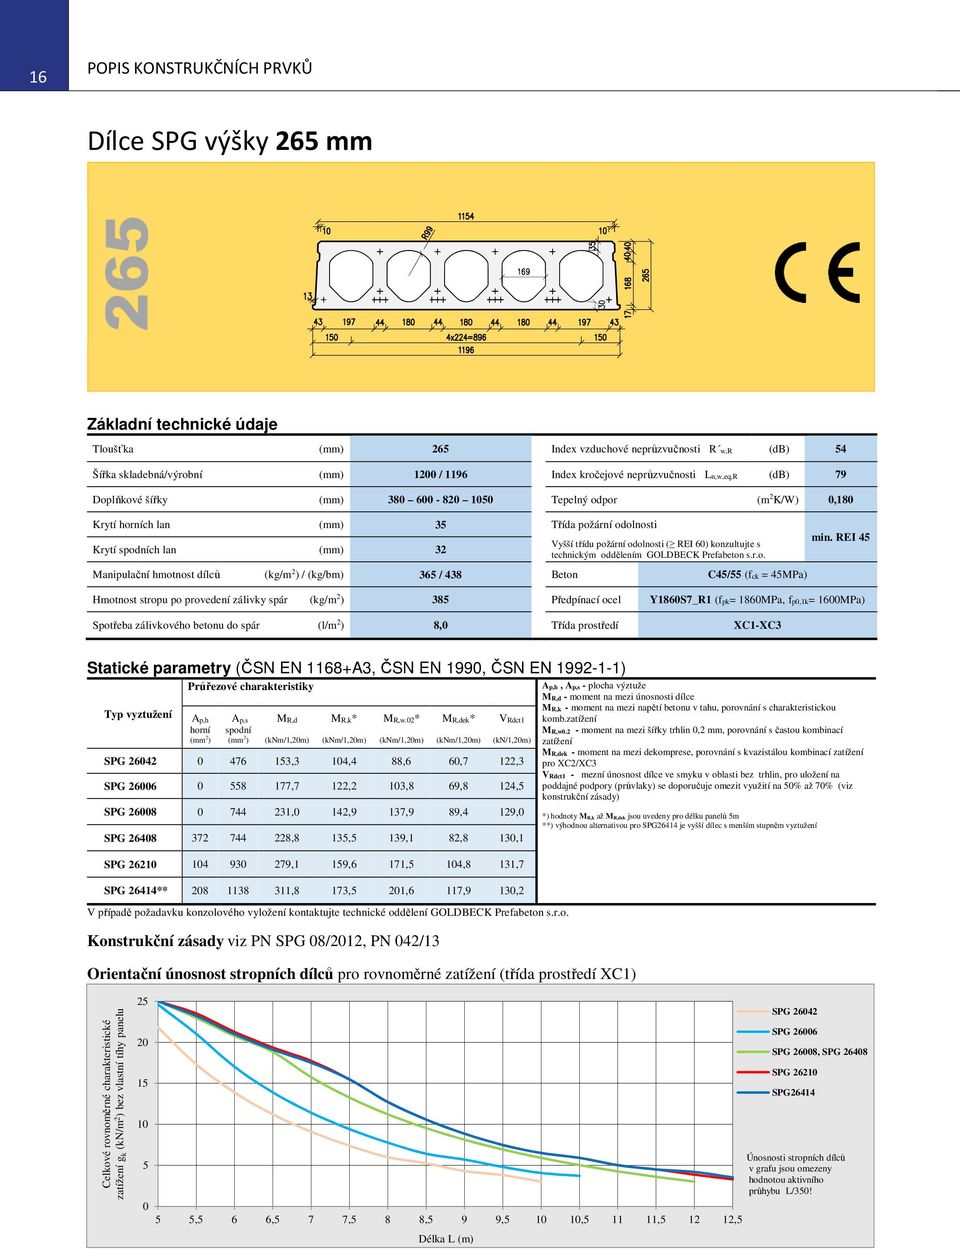 odolnosti ( REI 60) konzultujte s technickým oddělením GOLDBECK Prefabeton s.r.o. Manipulační hmotnost dílců (kg/m 2 ) / (kg/bm) 365 / 438 Beton C45/55 (fck = 45MPa) min.